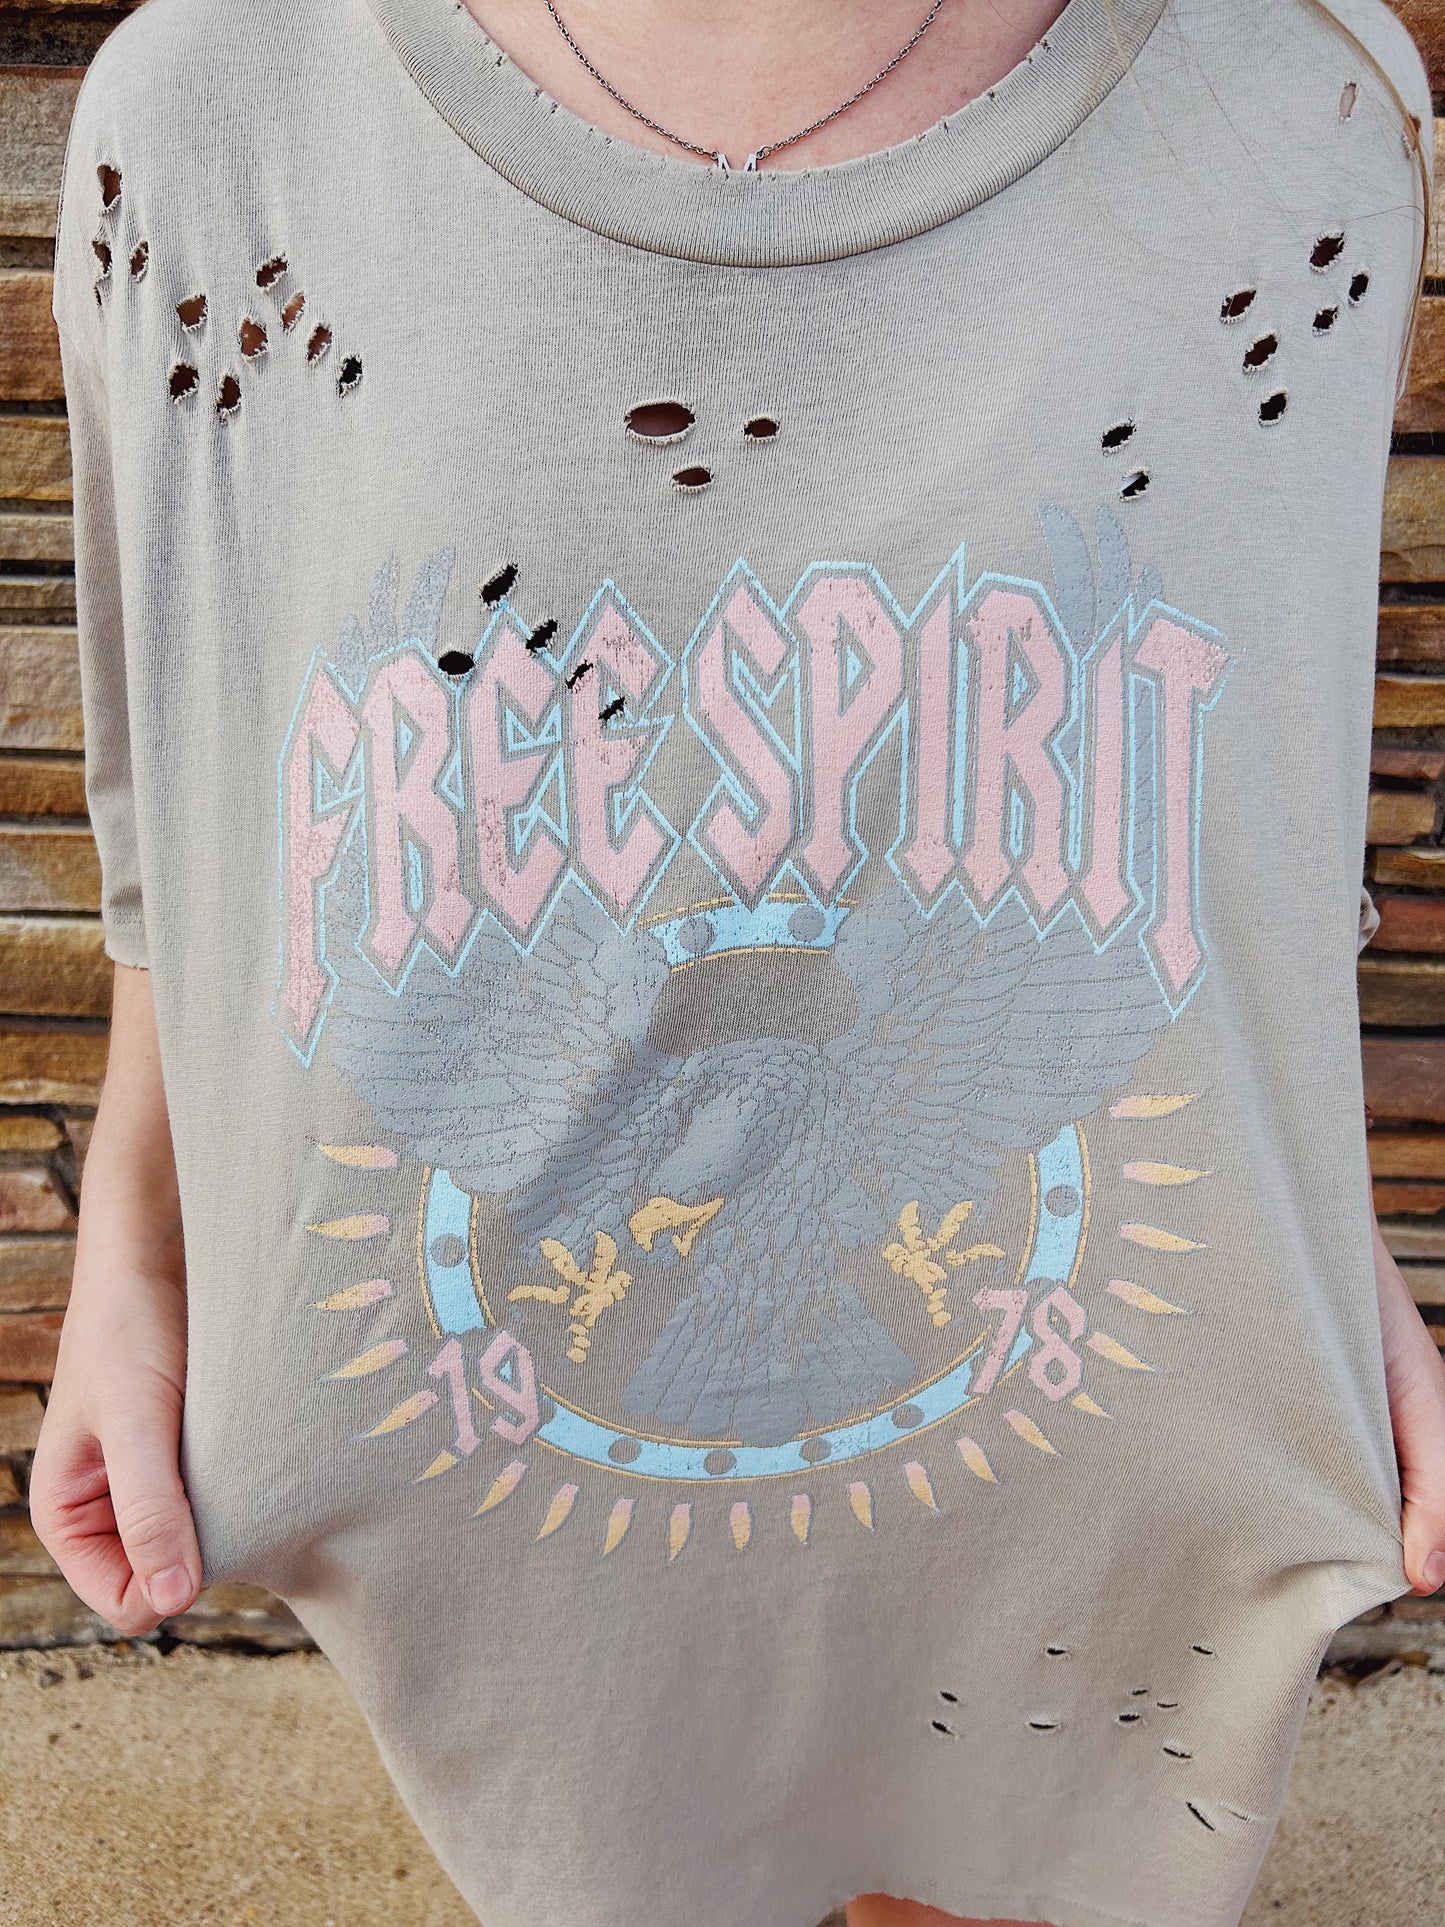 Free spirit tee